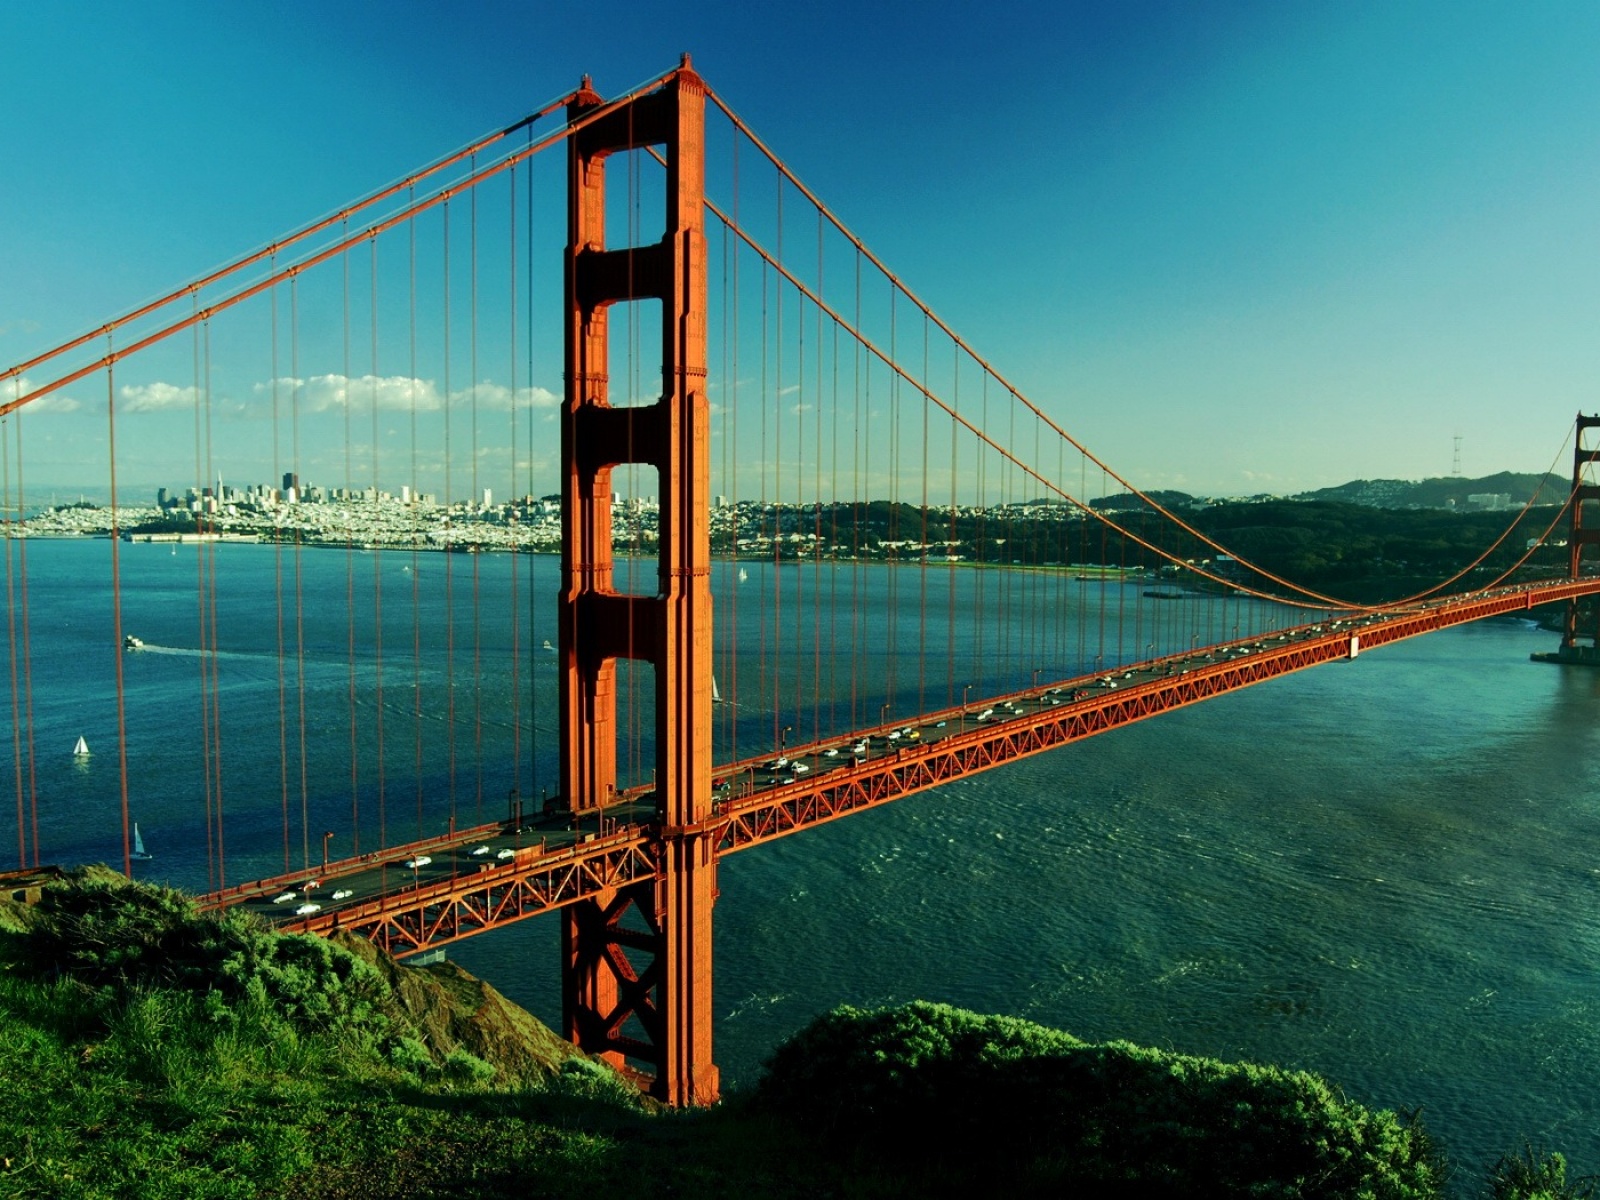 Fond d'ecran Golden Gate de jour